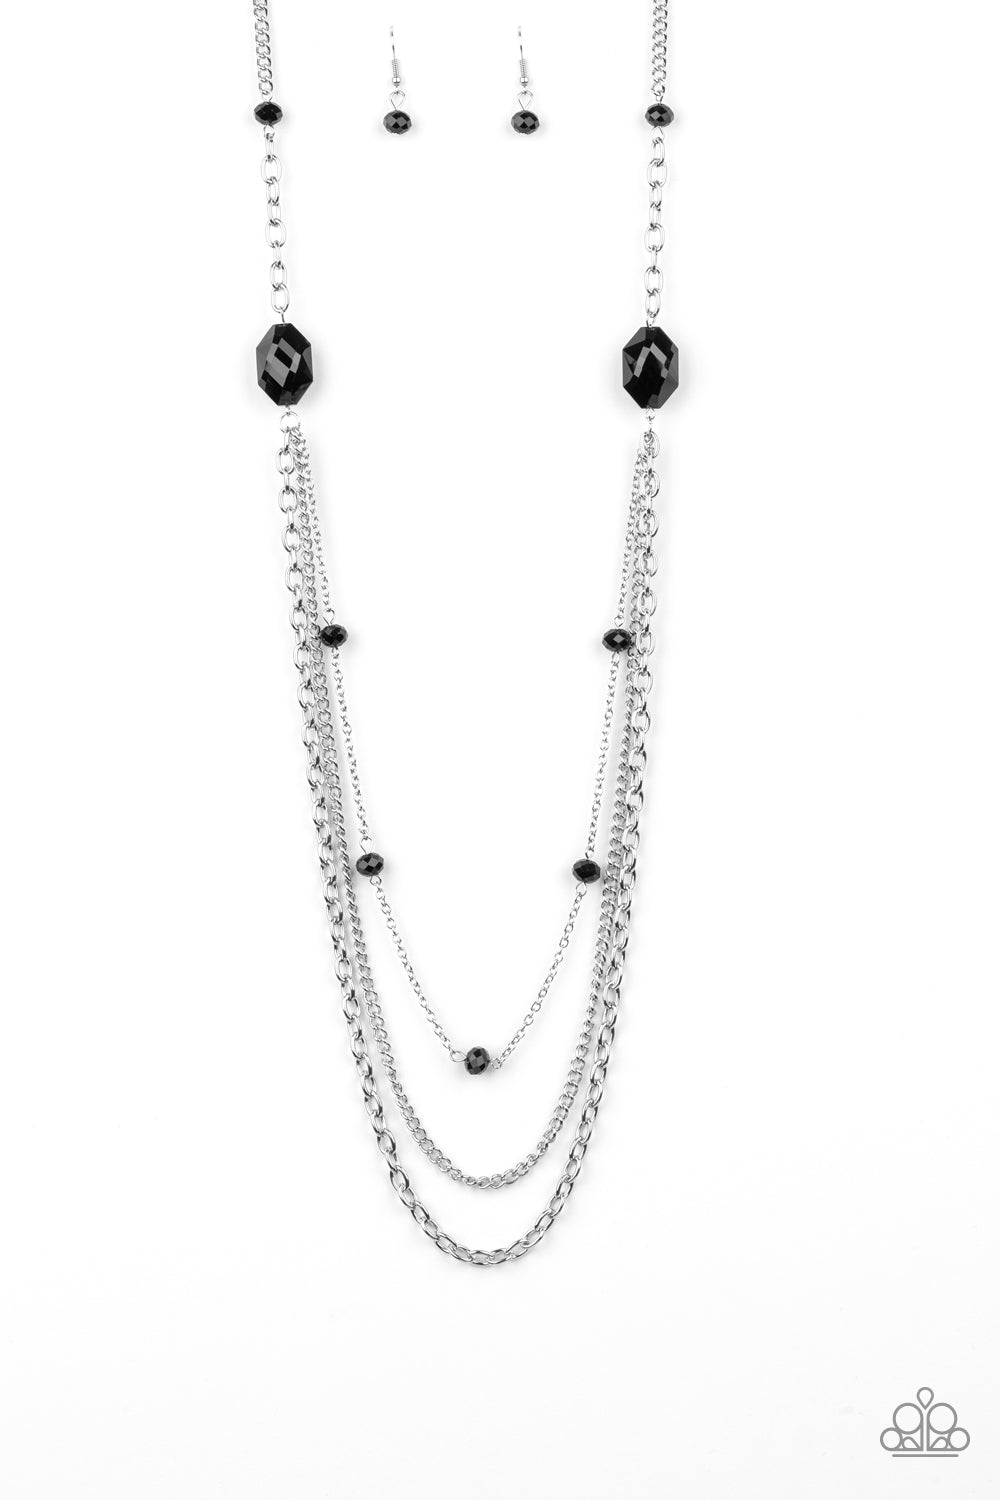 Dare To Dazzle - Paparazzi - Black Bead Layered Chain Necklace